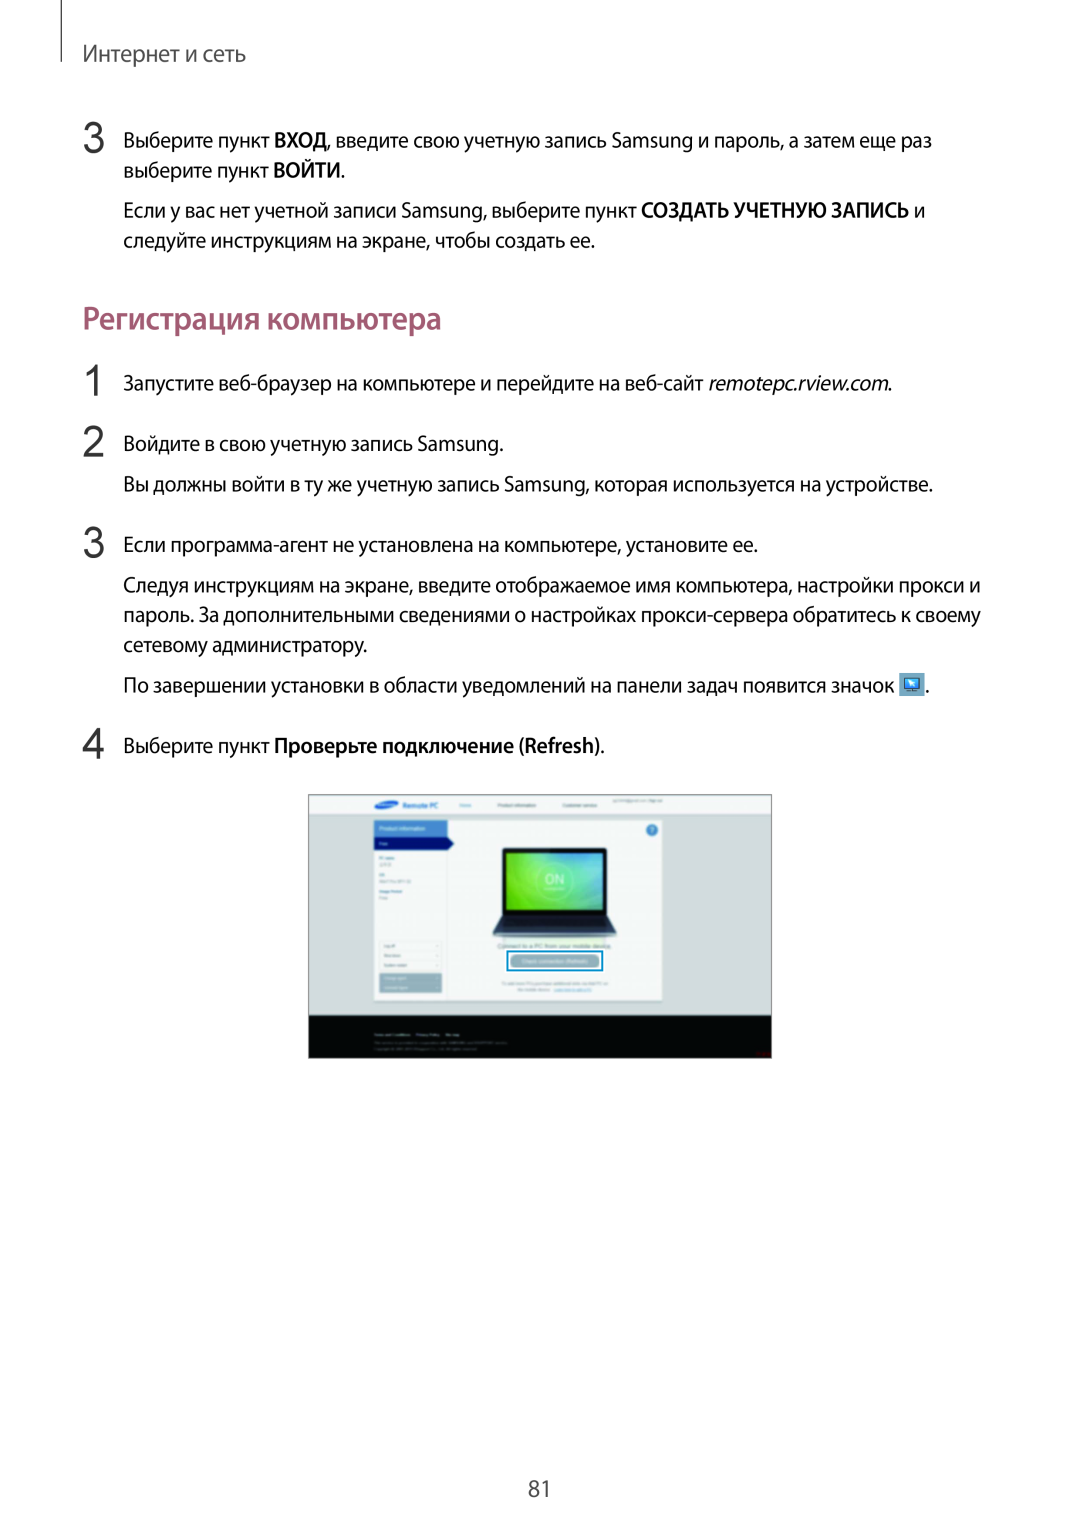 Samsung SM-P9000ZWASEB manual Регистрация компьютера, Выберите пункт Проверьте подключение Refresh, Интернет и сеть 